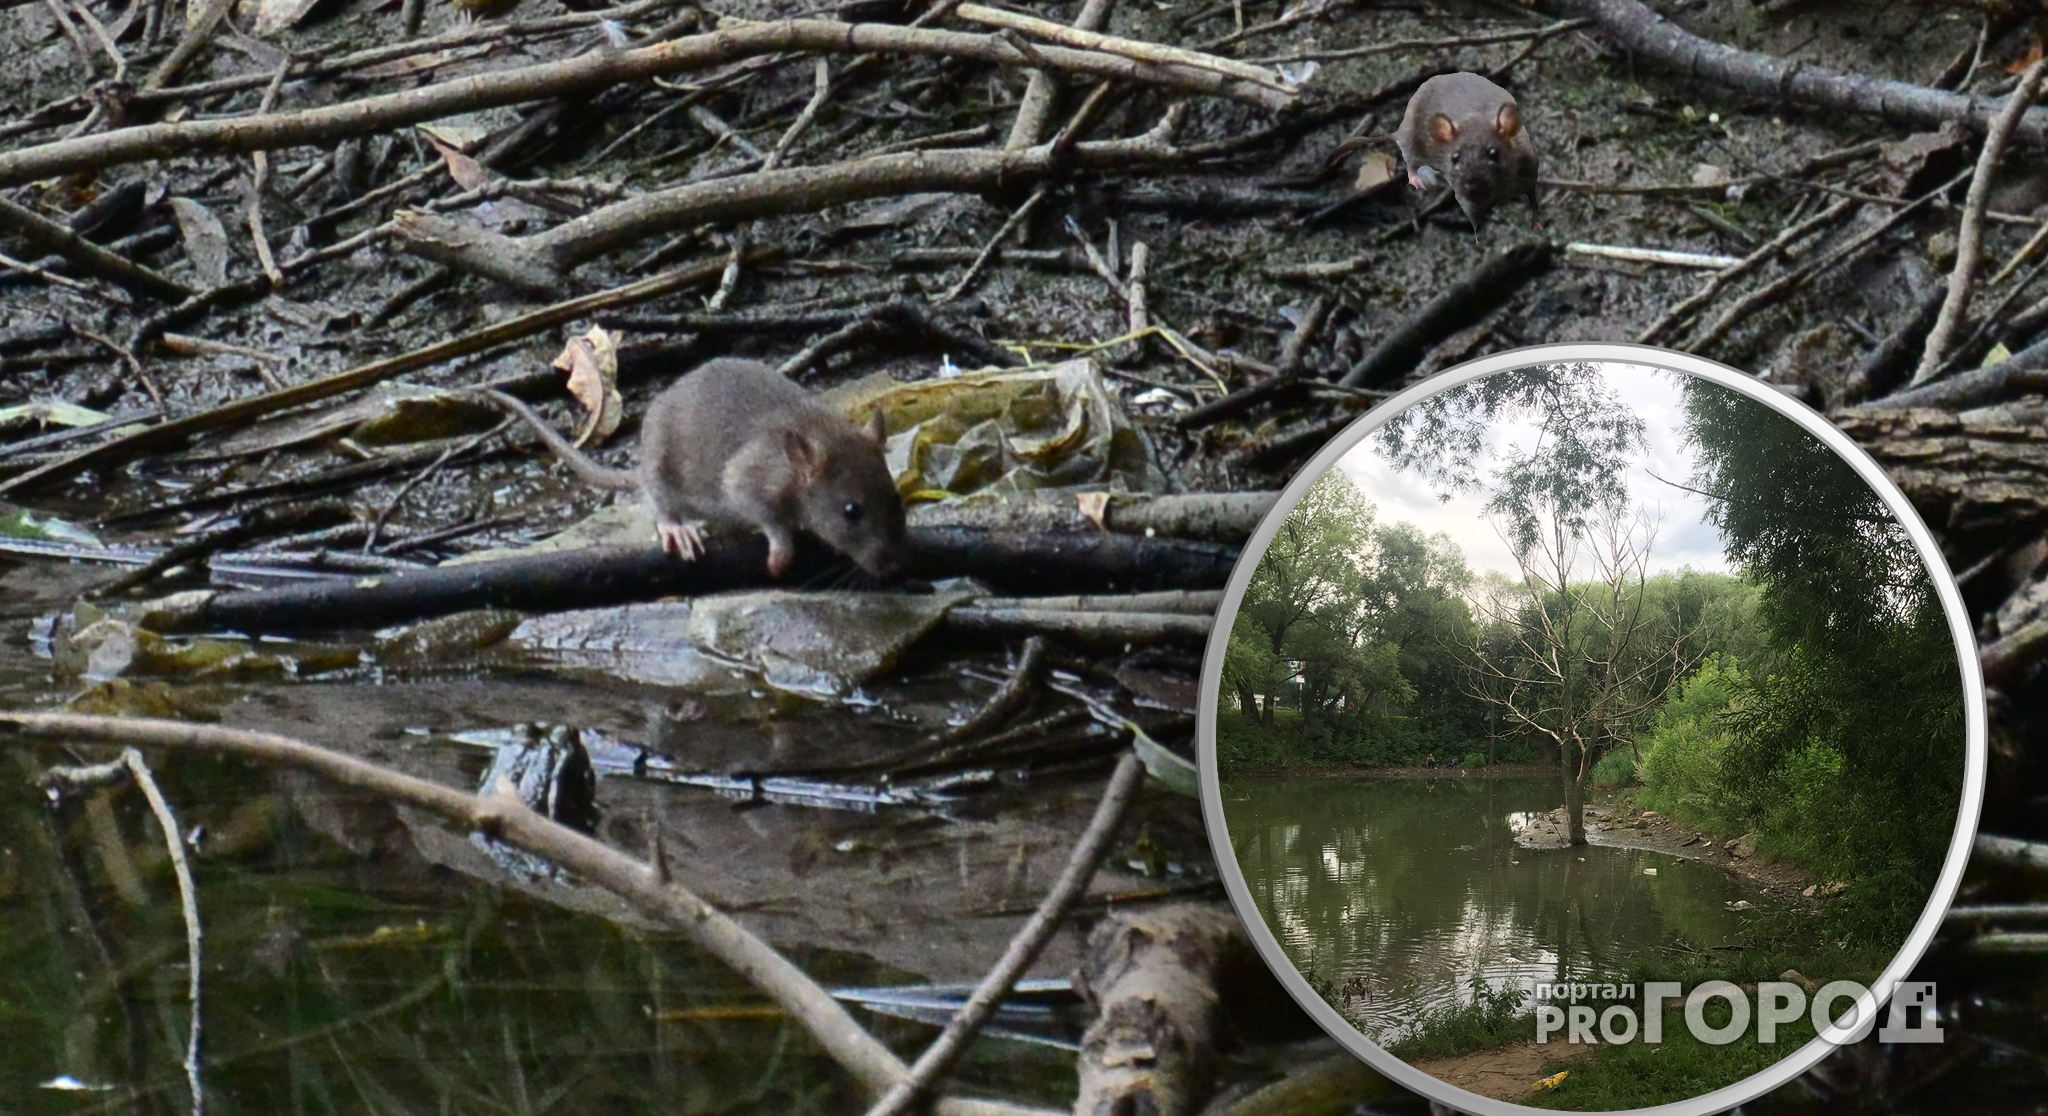 Крысиный рай на Новоселов - за 15 минут мы увидели десятки грызунов